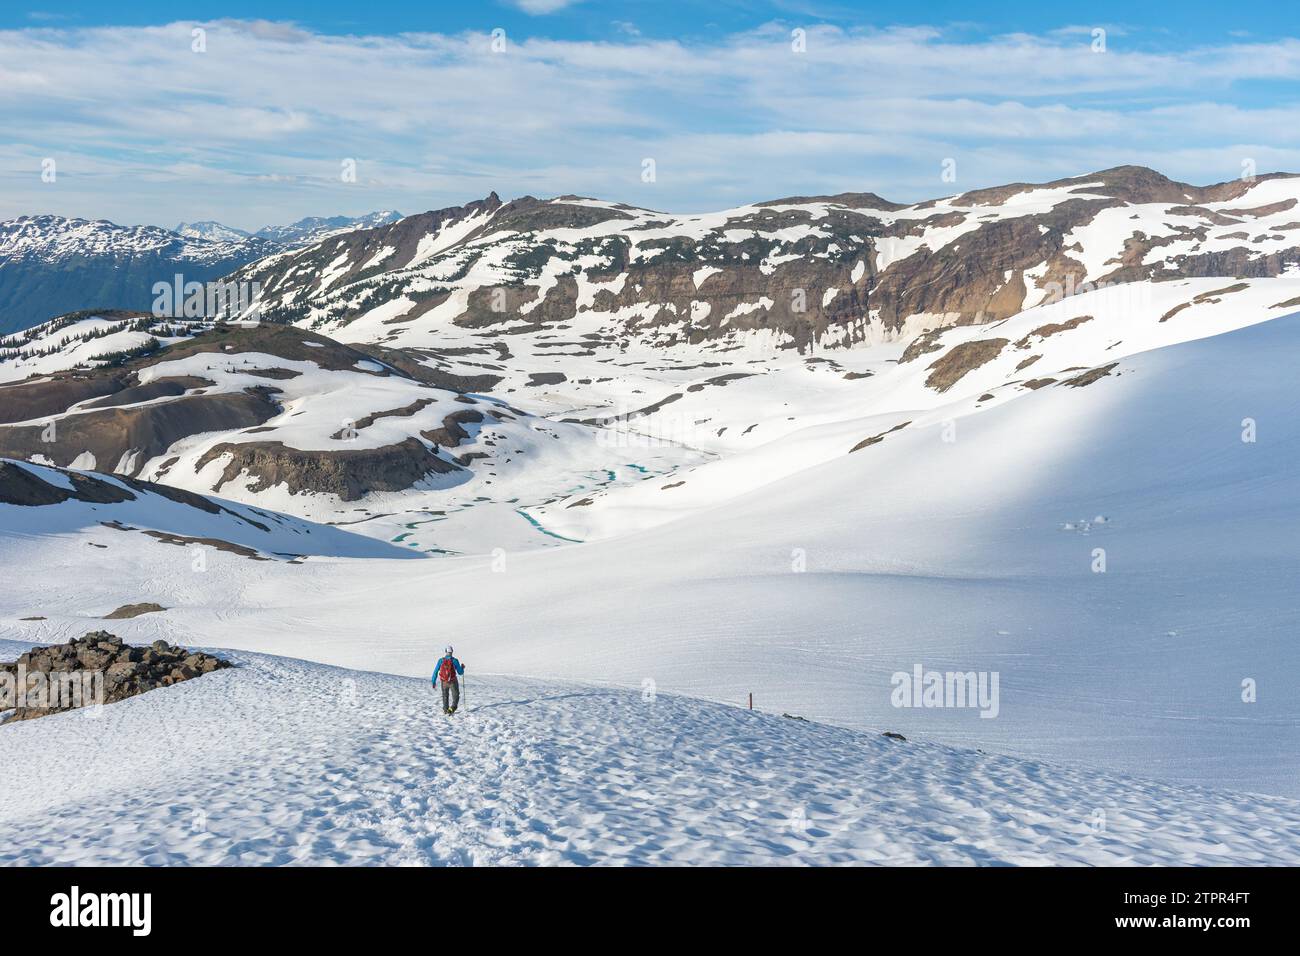 L'avventuriero scende sulle piste innevate di Panorama Ridge nella splendida British Columbia. Foto Stock